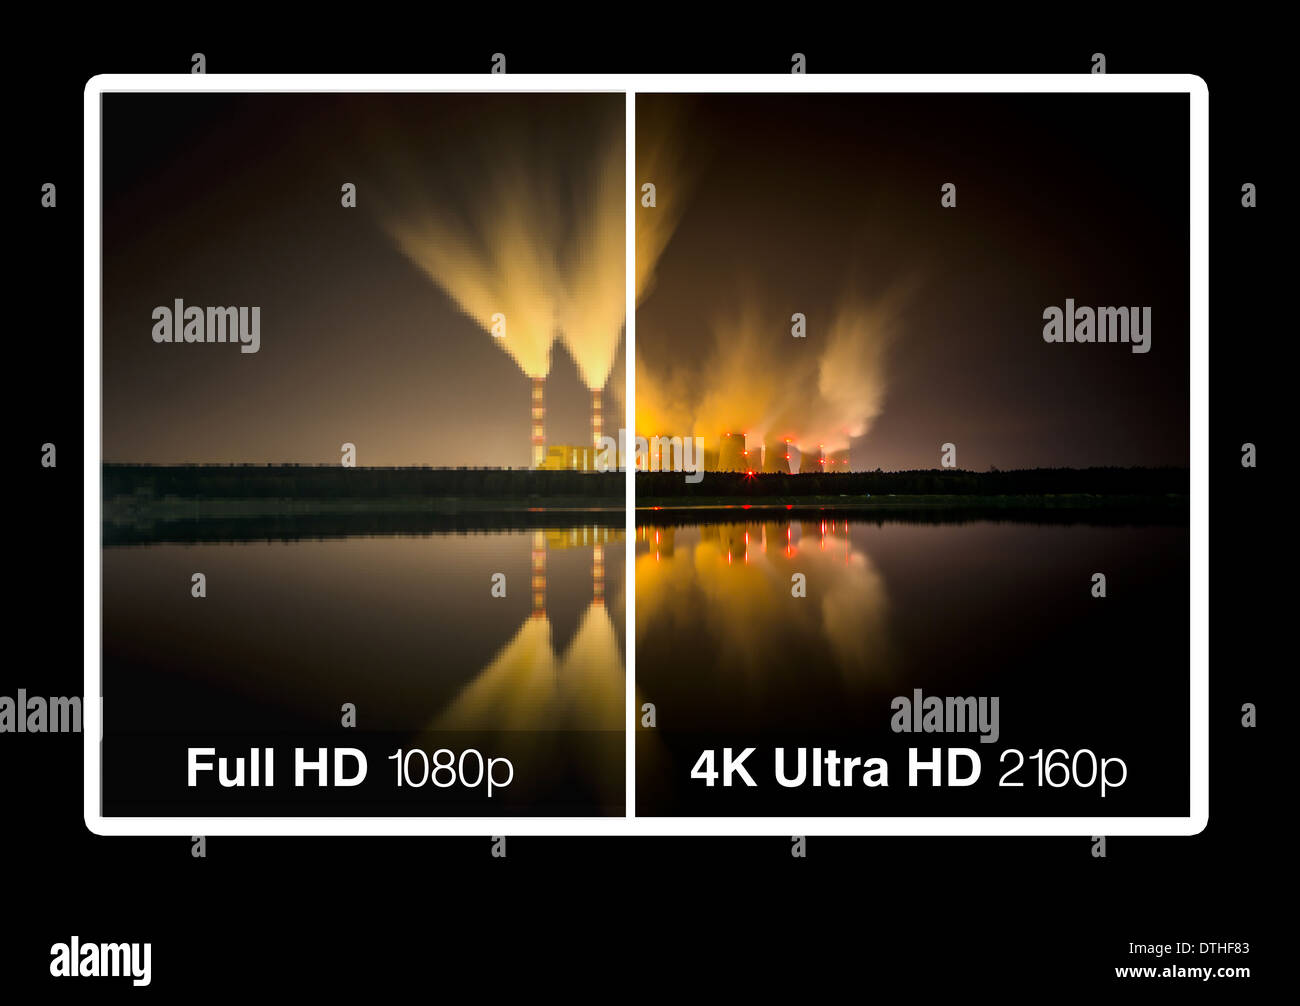 Pantalla de tv de 4K con la comparación de las resoluciones. Ultra HD en el televisor moderno Foto de stock